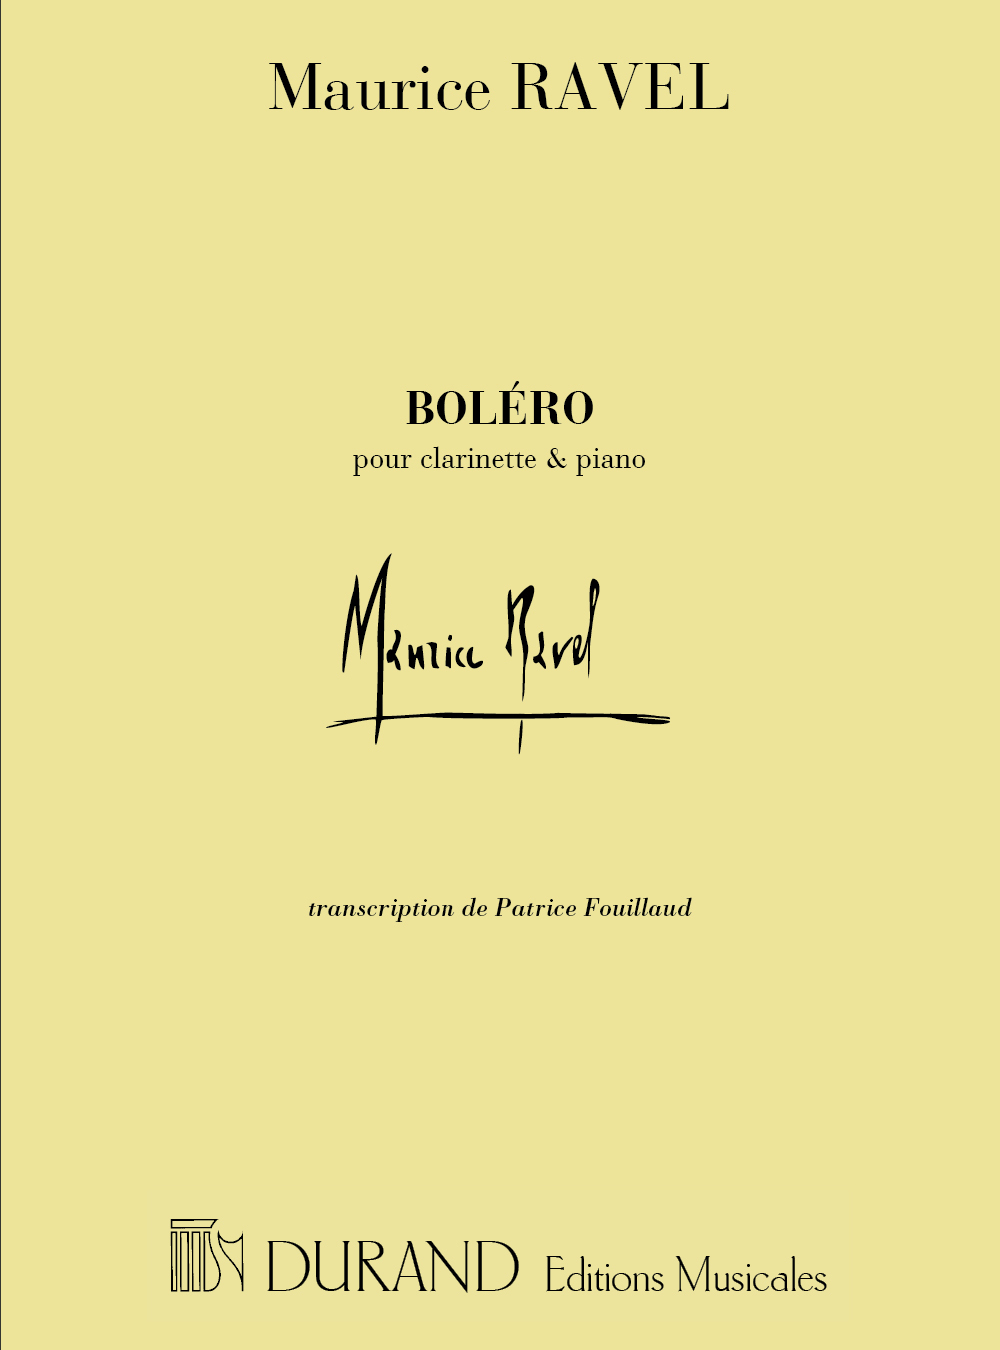 Cover: 9790044077076 | Bolero | Maurice Ravel | Partitur | 2001 | Editions Durand